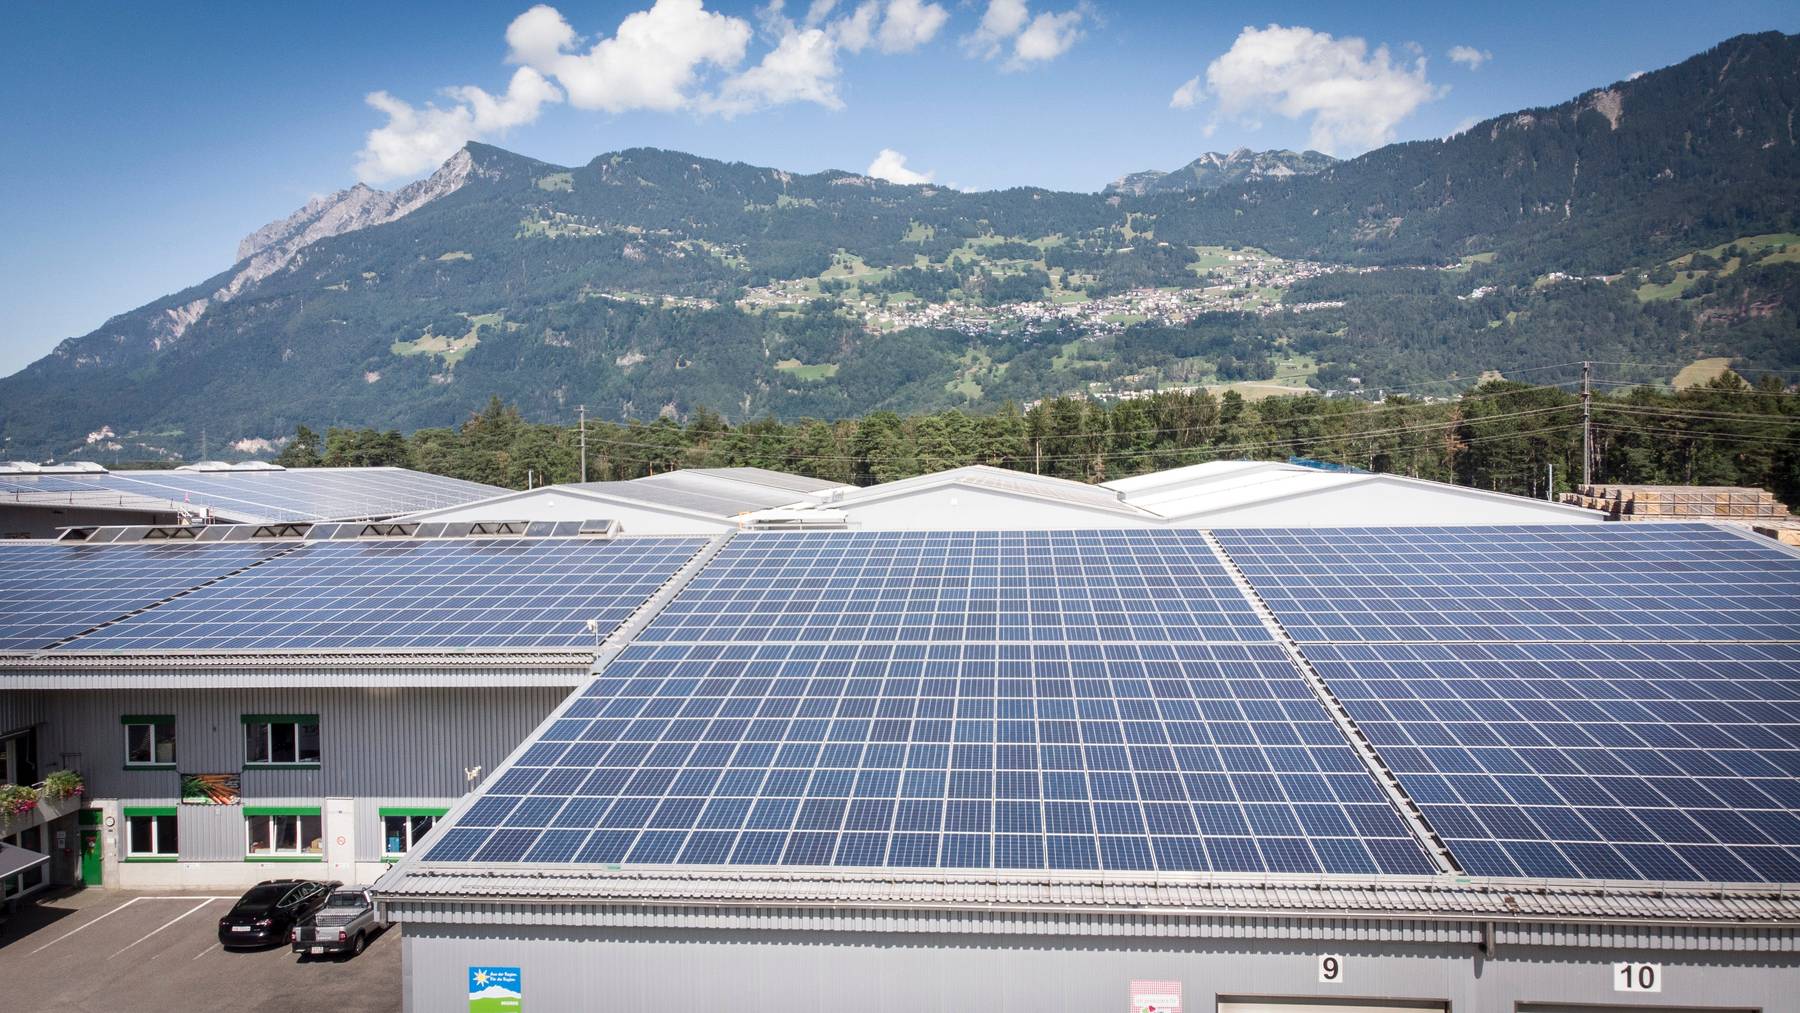 Die Stromproduktion von Sonne und Wind fristet in der Schweiz gemäss der Energie-Stiftung immer noch ein marginales Dasein.